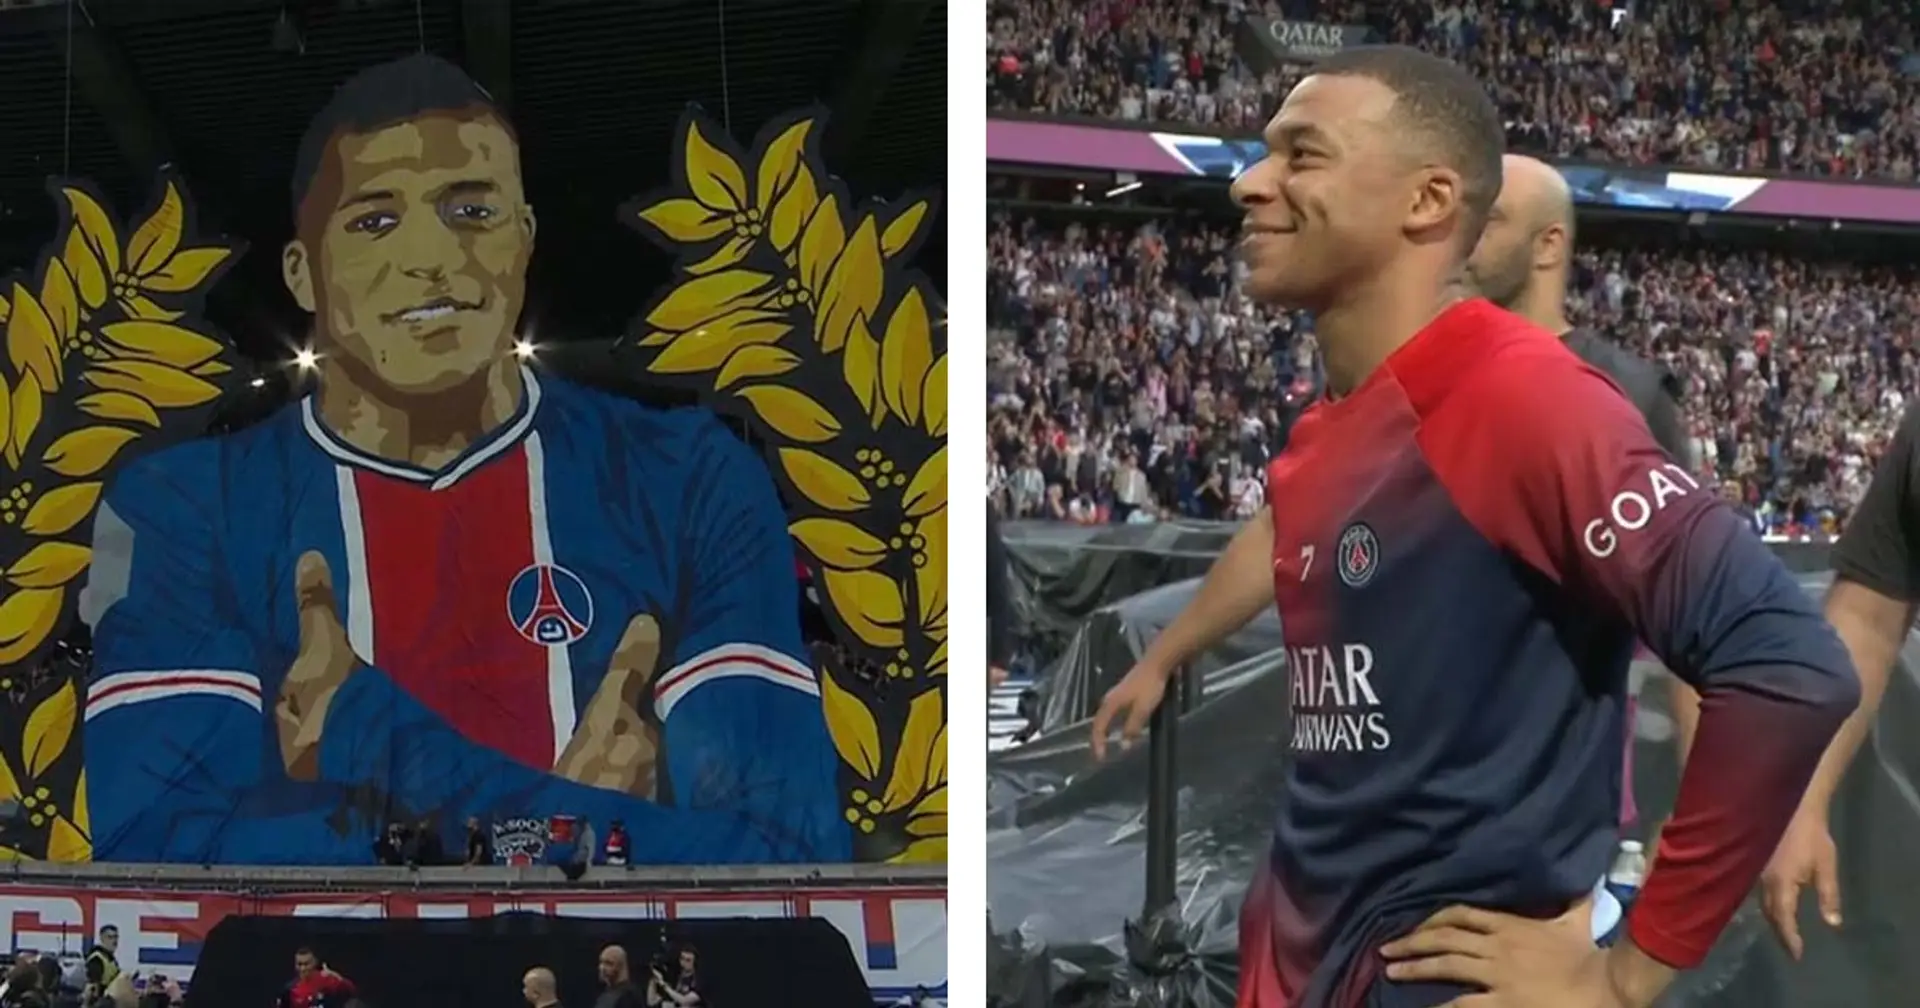 Le CUP déploie un immense tifo en hommage à Mbappé - la réaction du joueur est magnifique